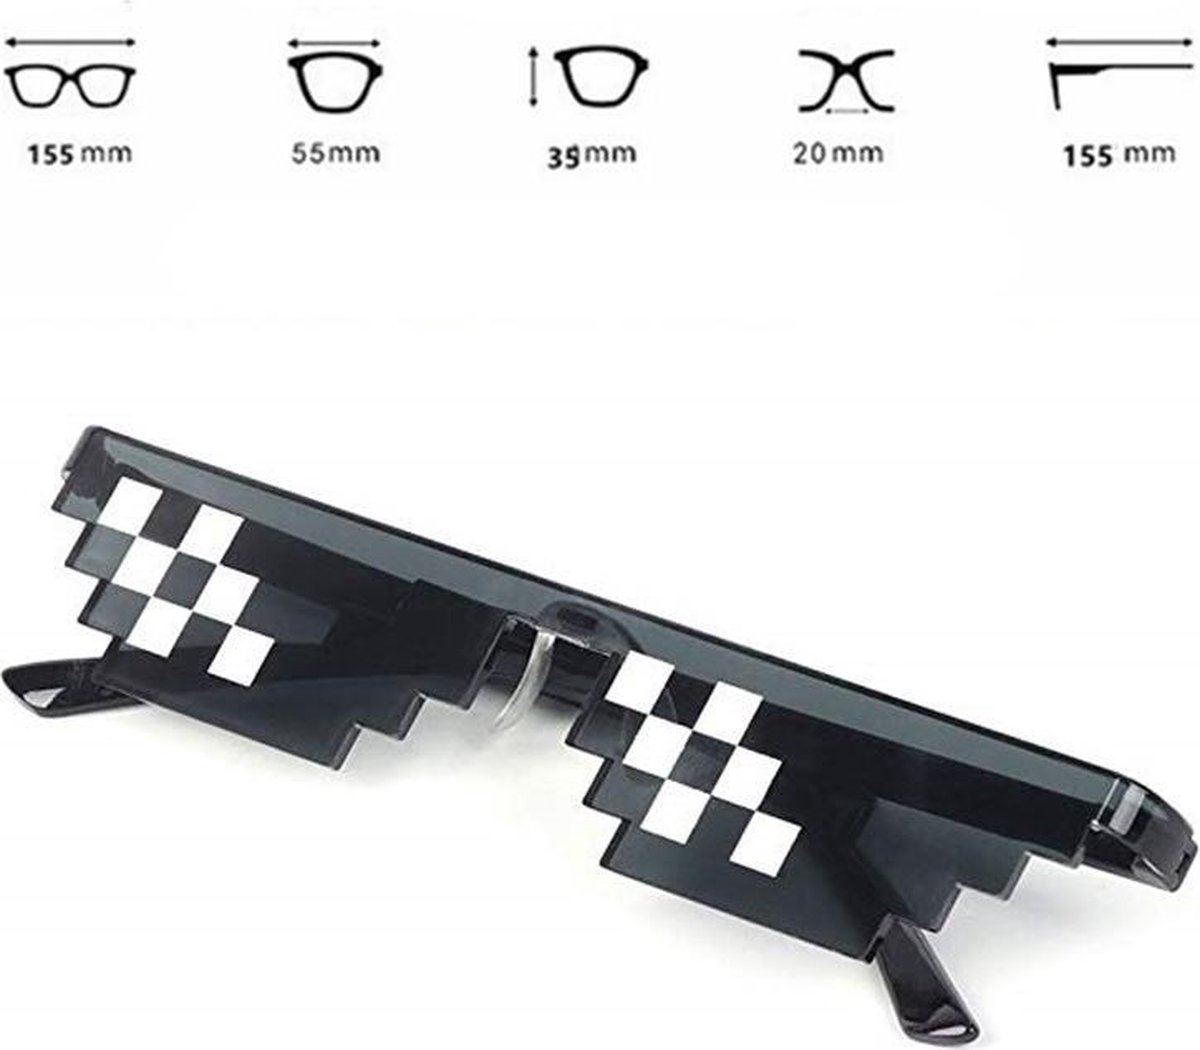 Thug life - zwart - Zonnebril - 8 Bit (hoge kwaliteit) - Unisex - Zonnebril Dames - Heren - Brillen - Vintage - Eyewear - Gift - Merkloos